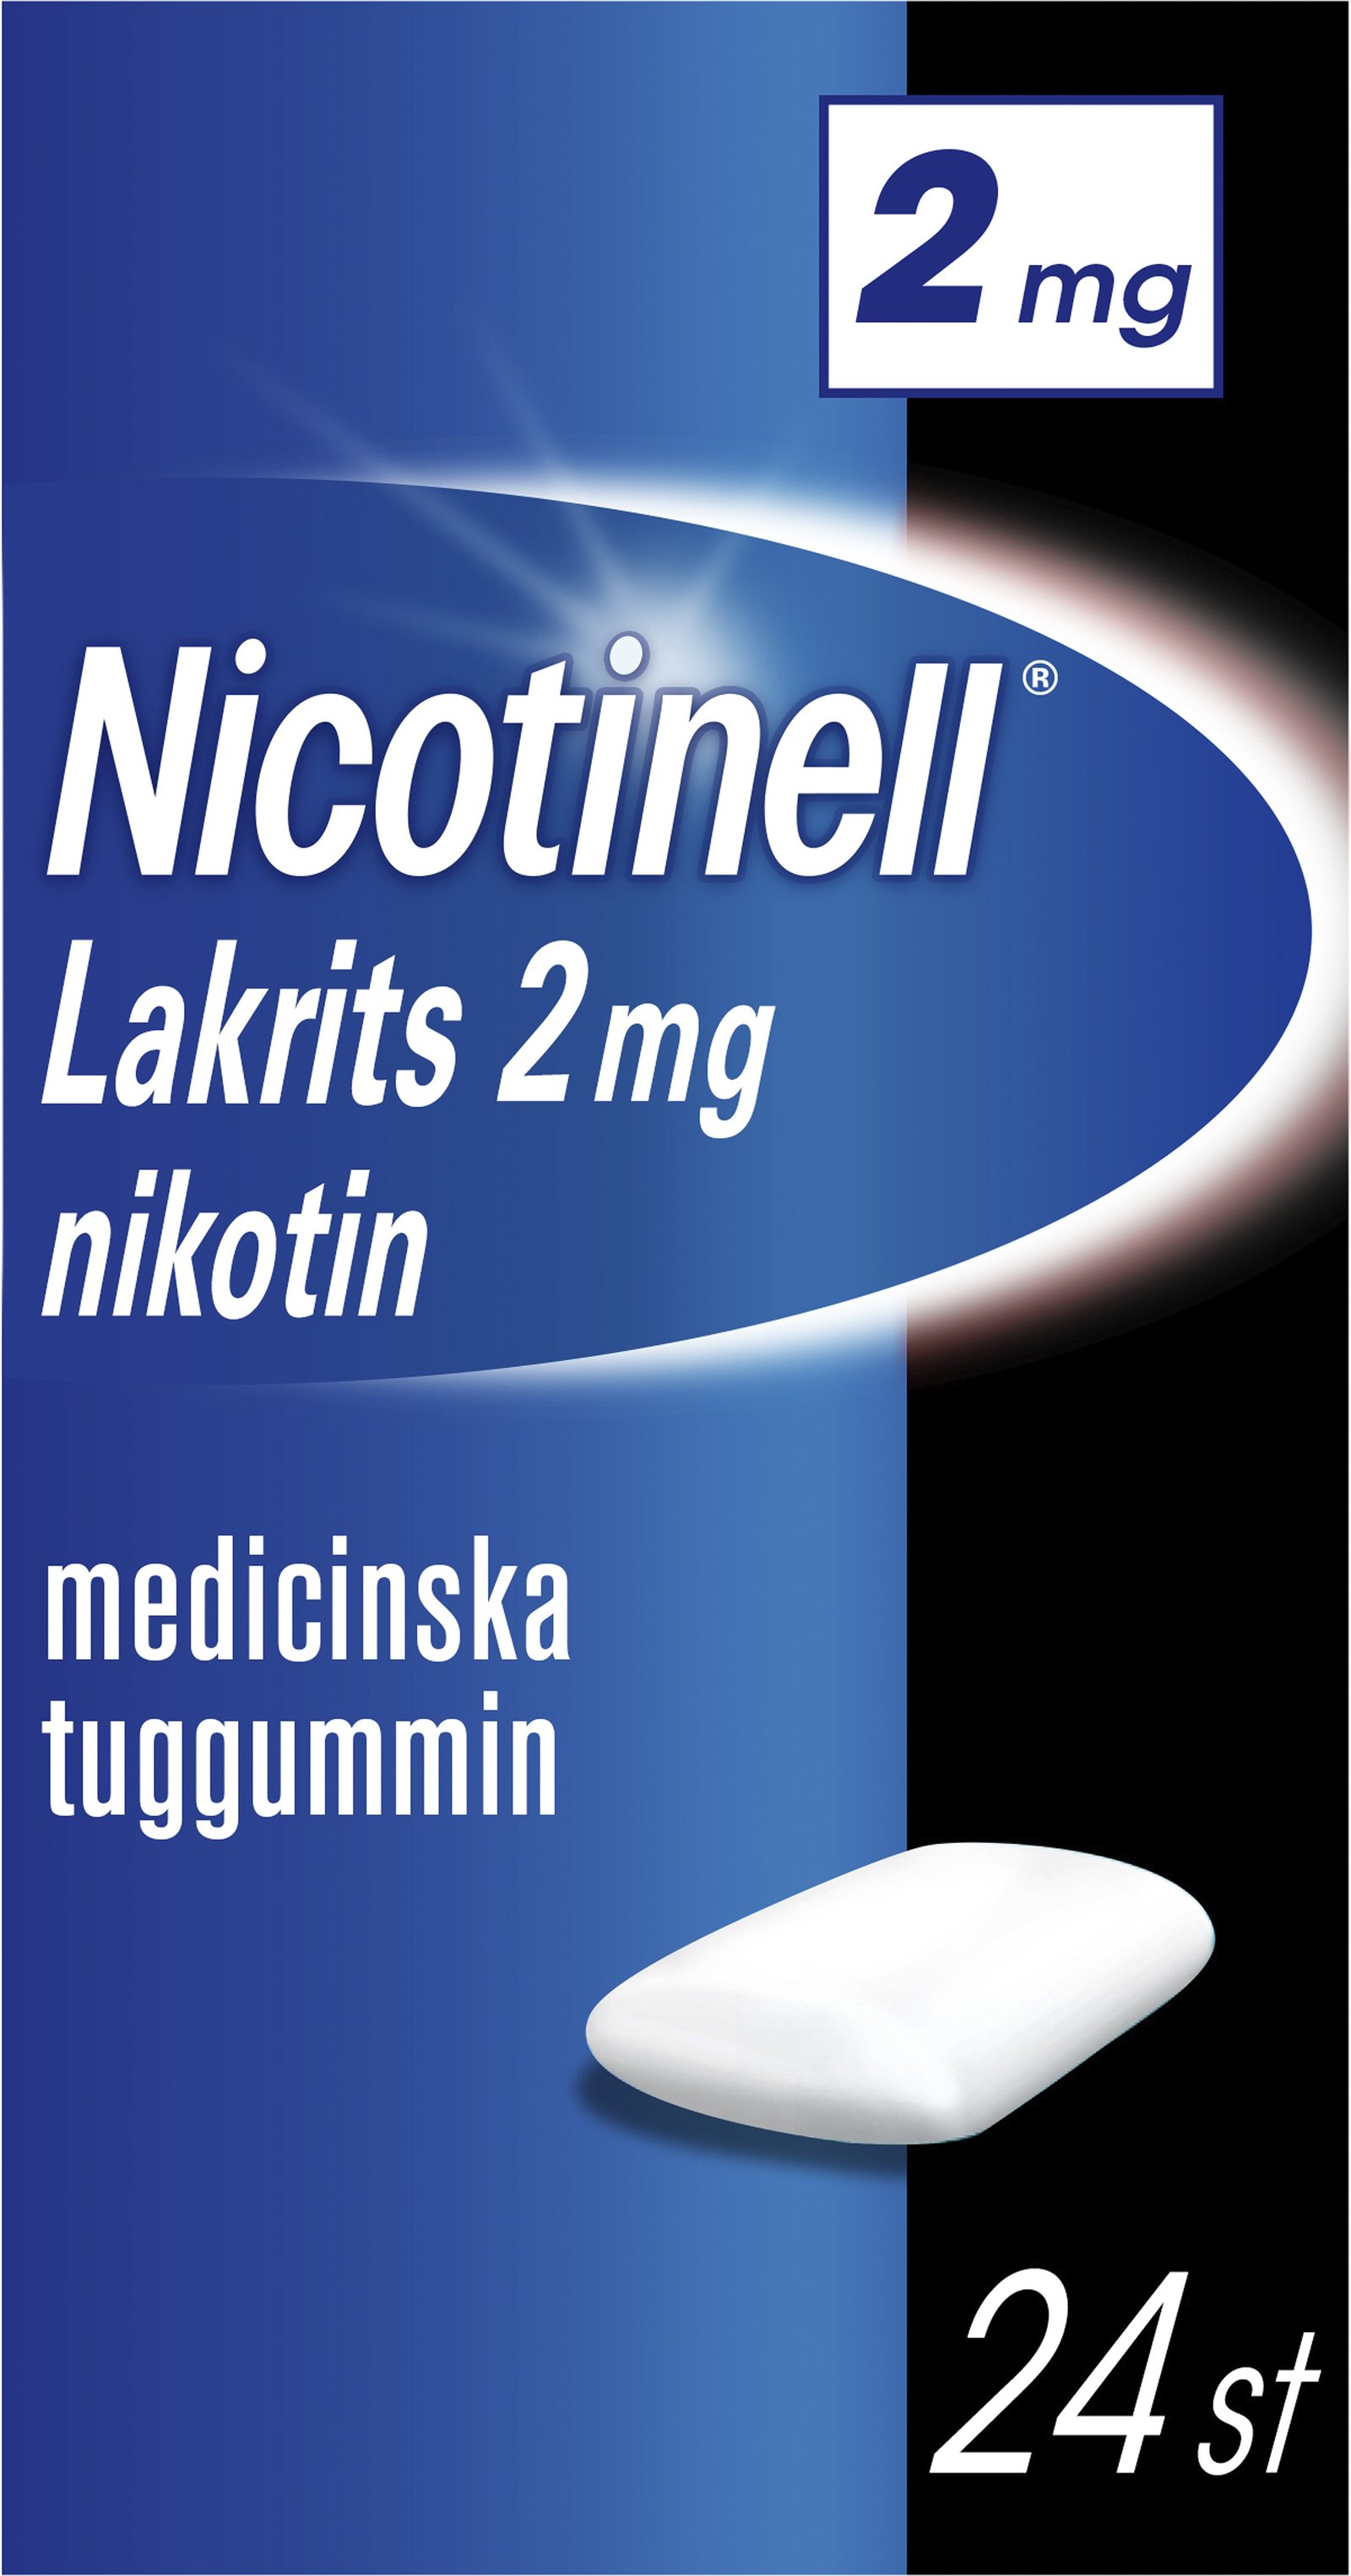 Nicotinell Lakrits 2mg Nikotin Medicinska tuggummin 24 st